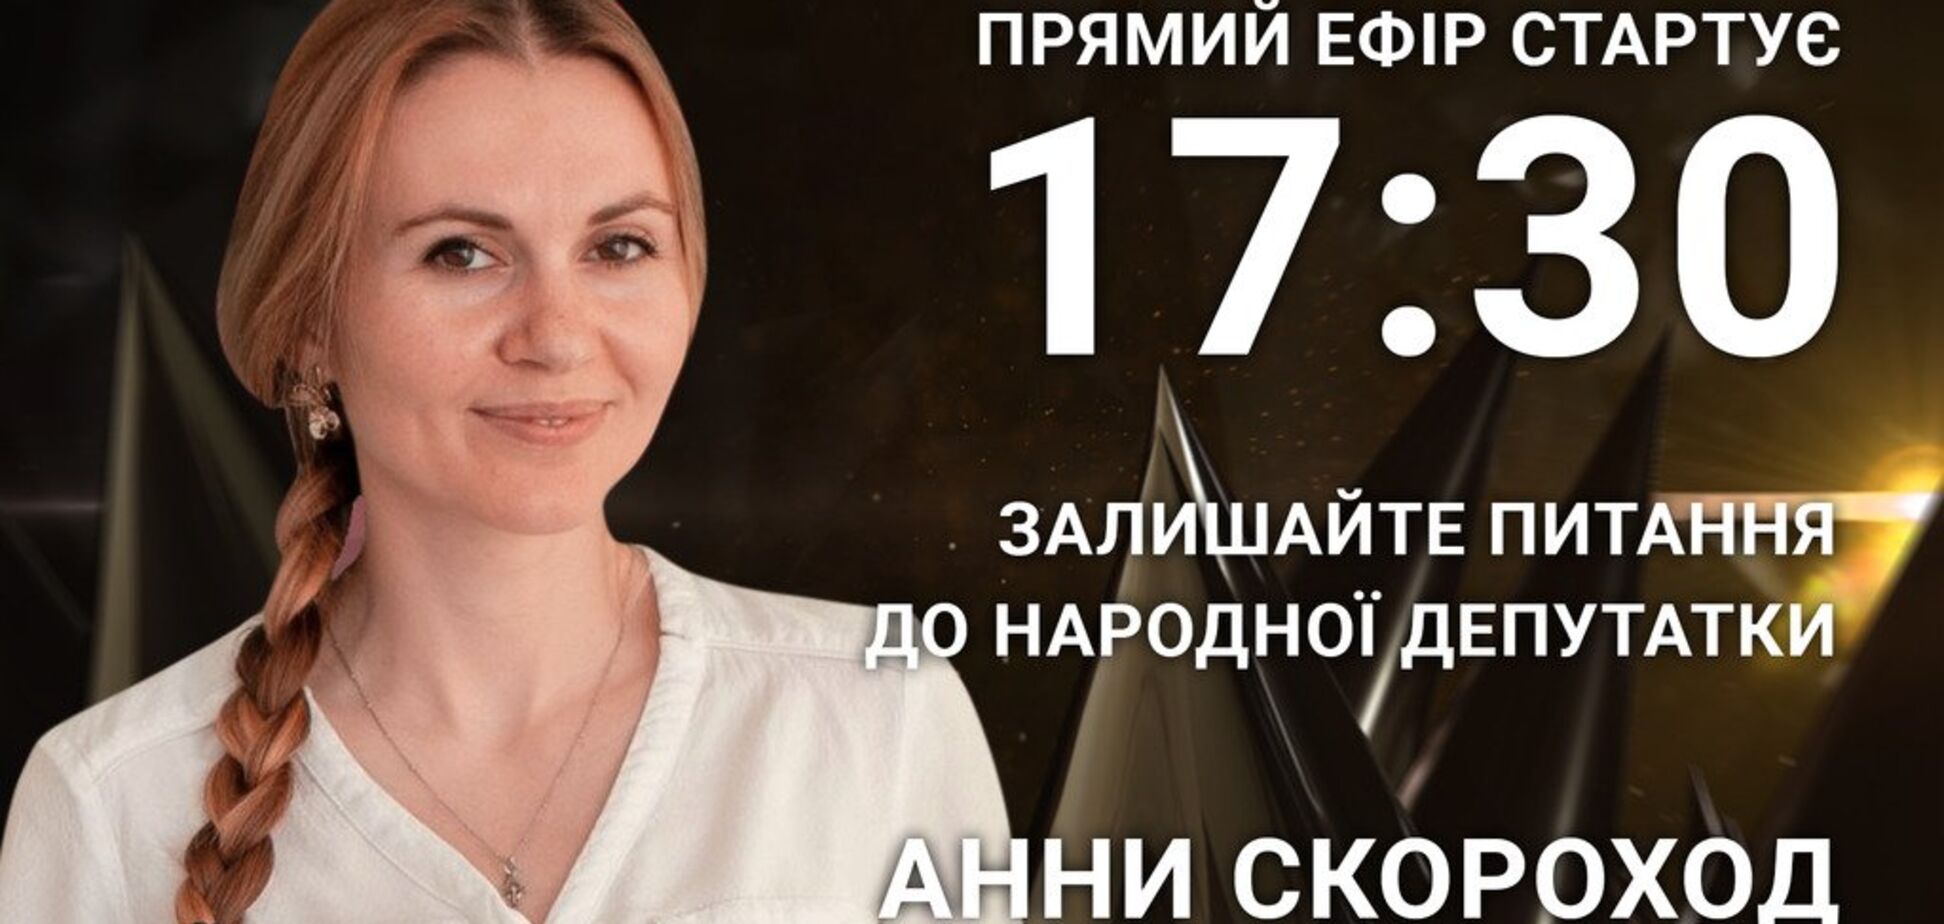 Анна Скороход: поставте народній депутатці гостре питання